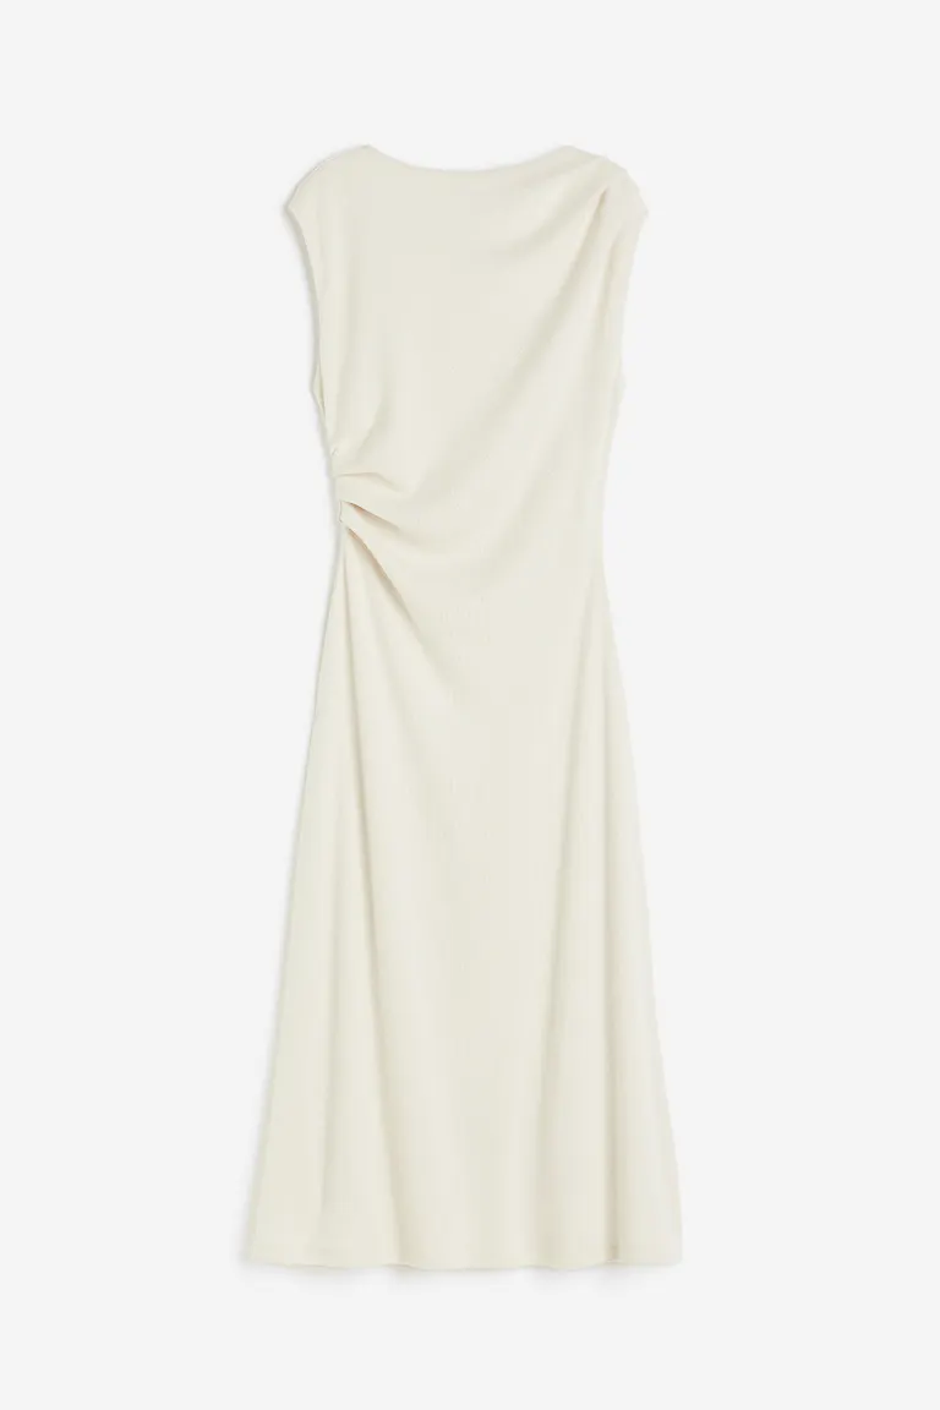 H&M drapirana haljina | Autor: H&M